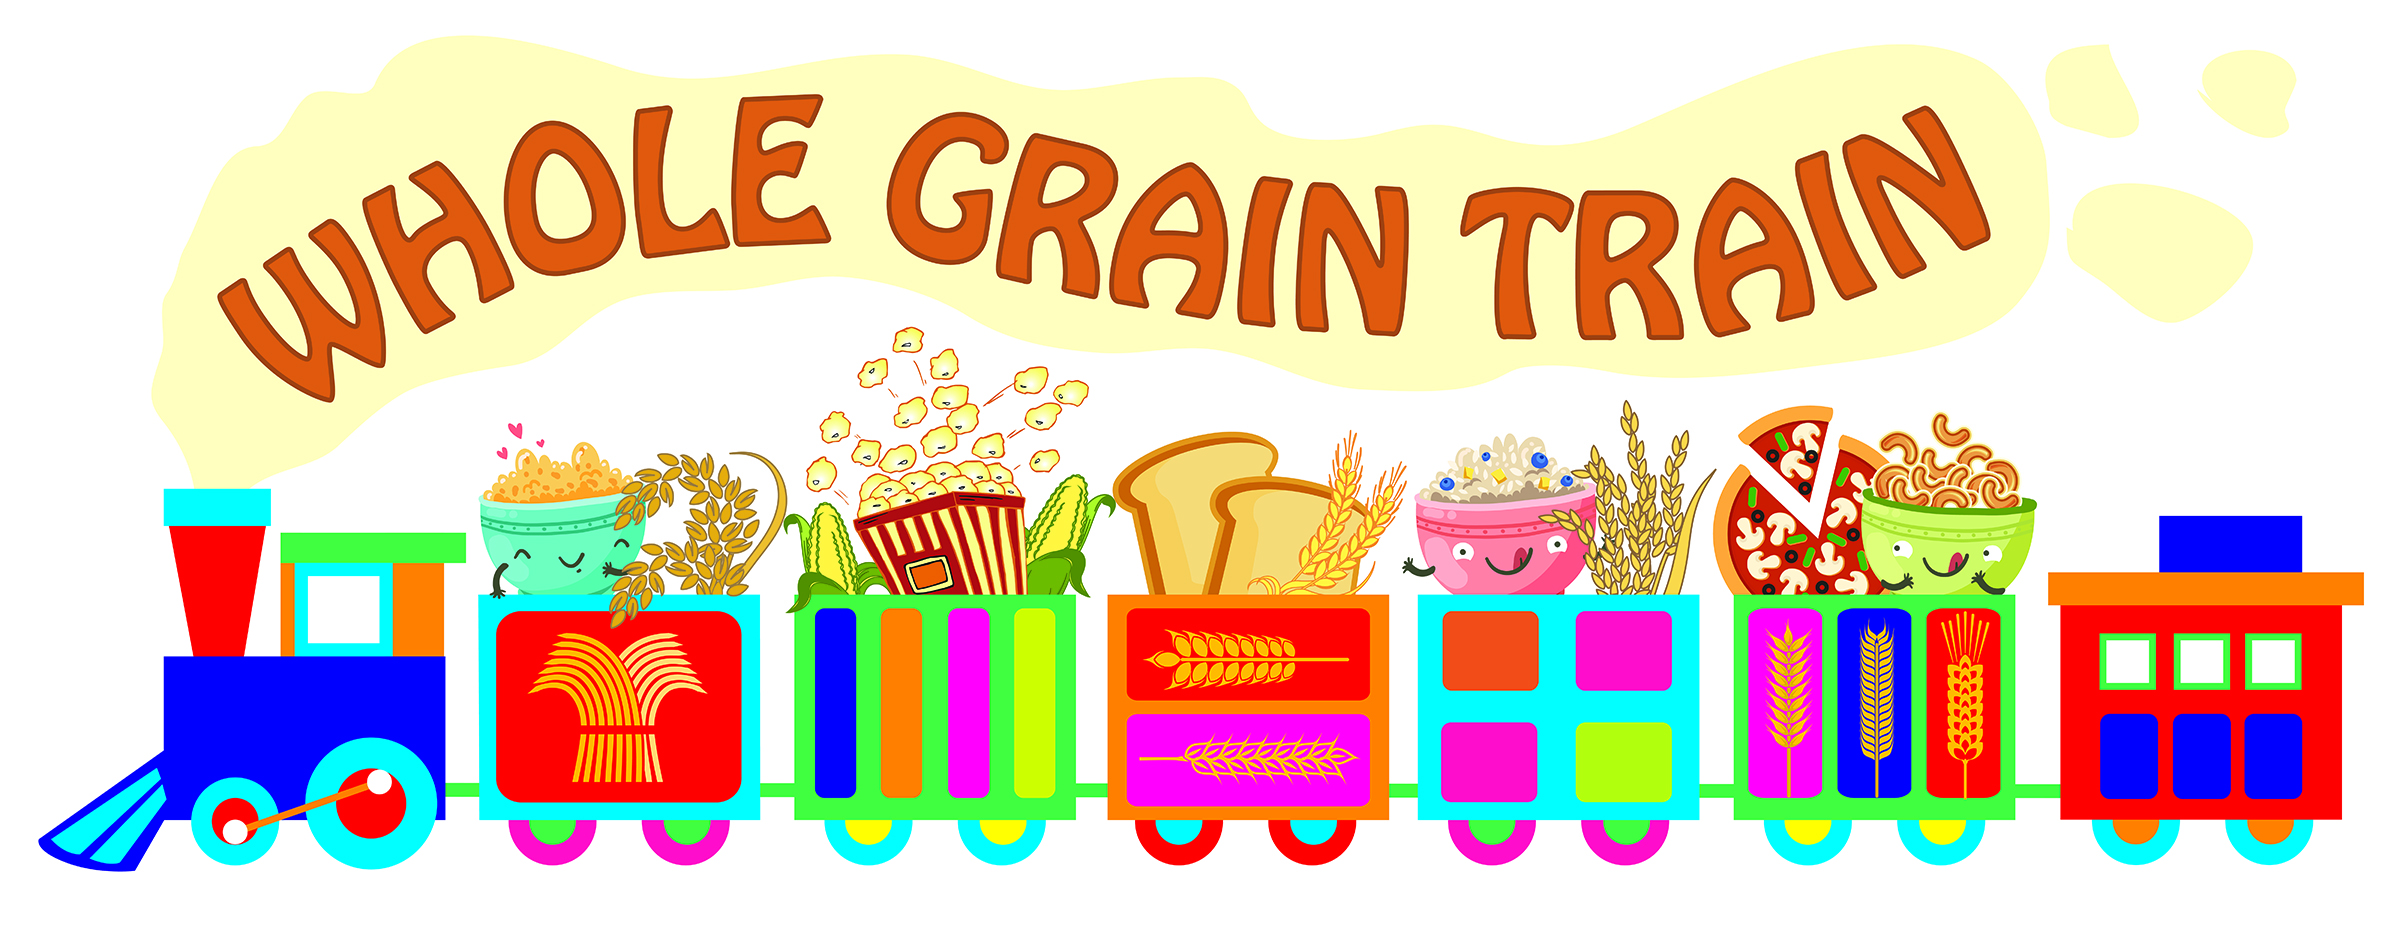 whole grain train song